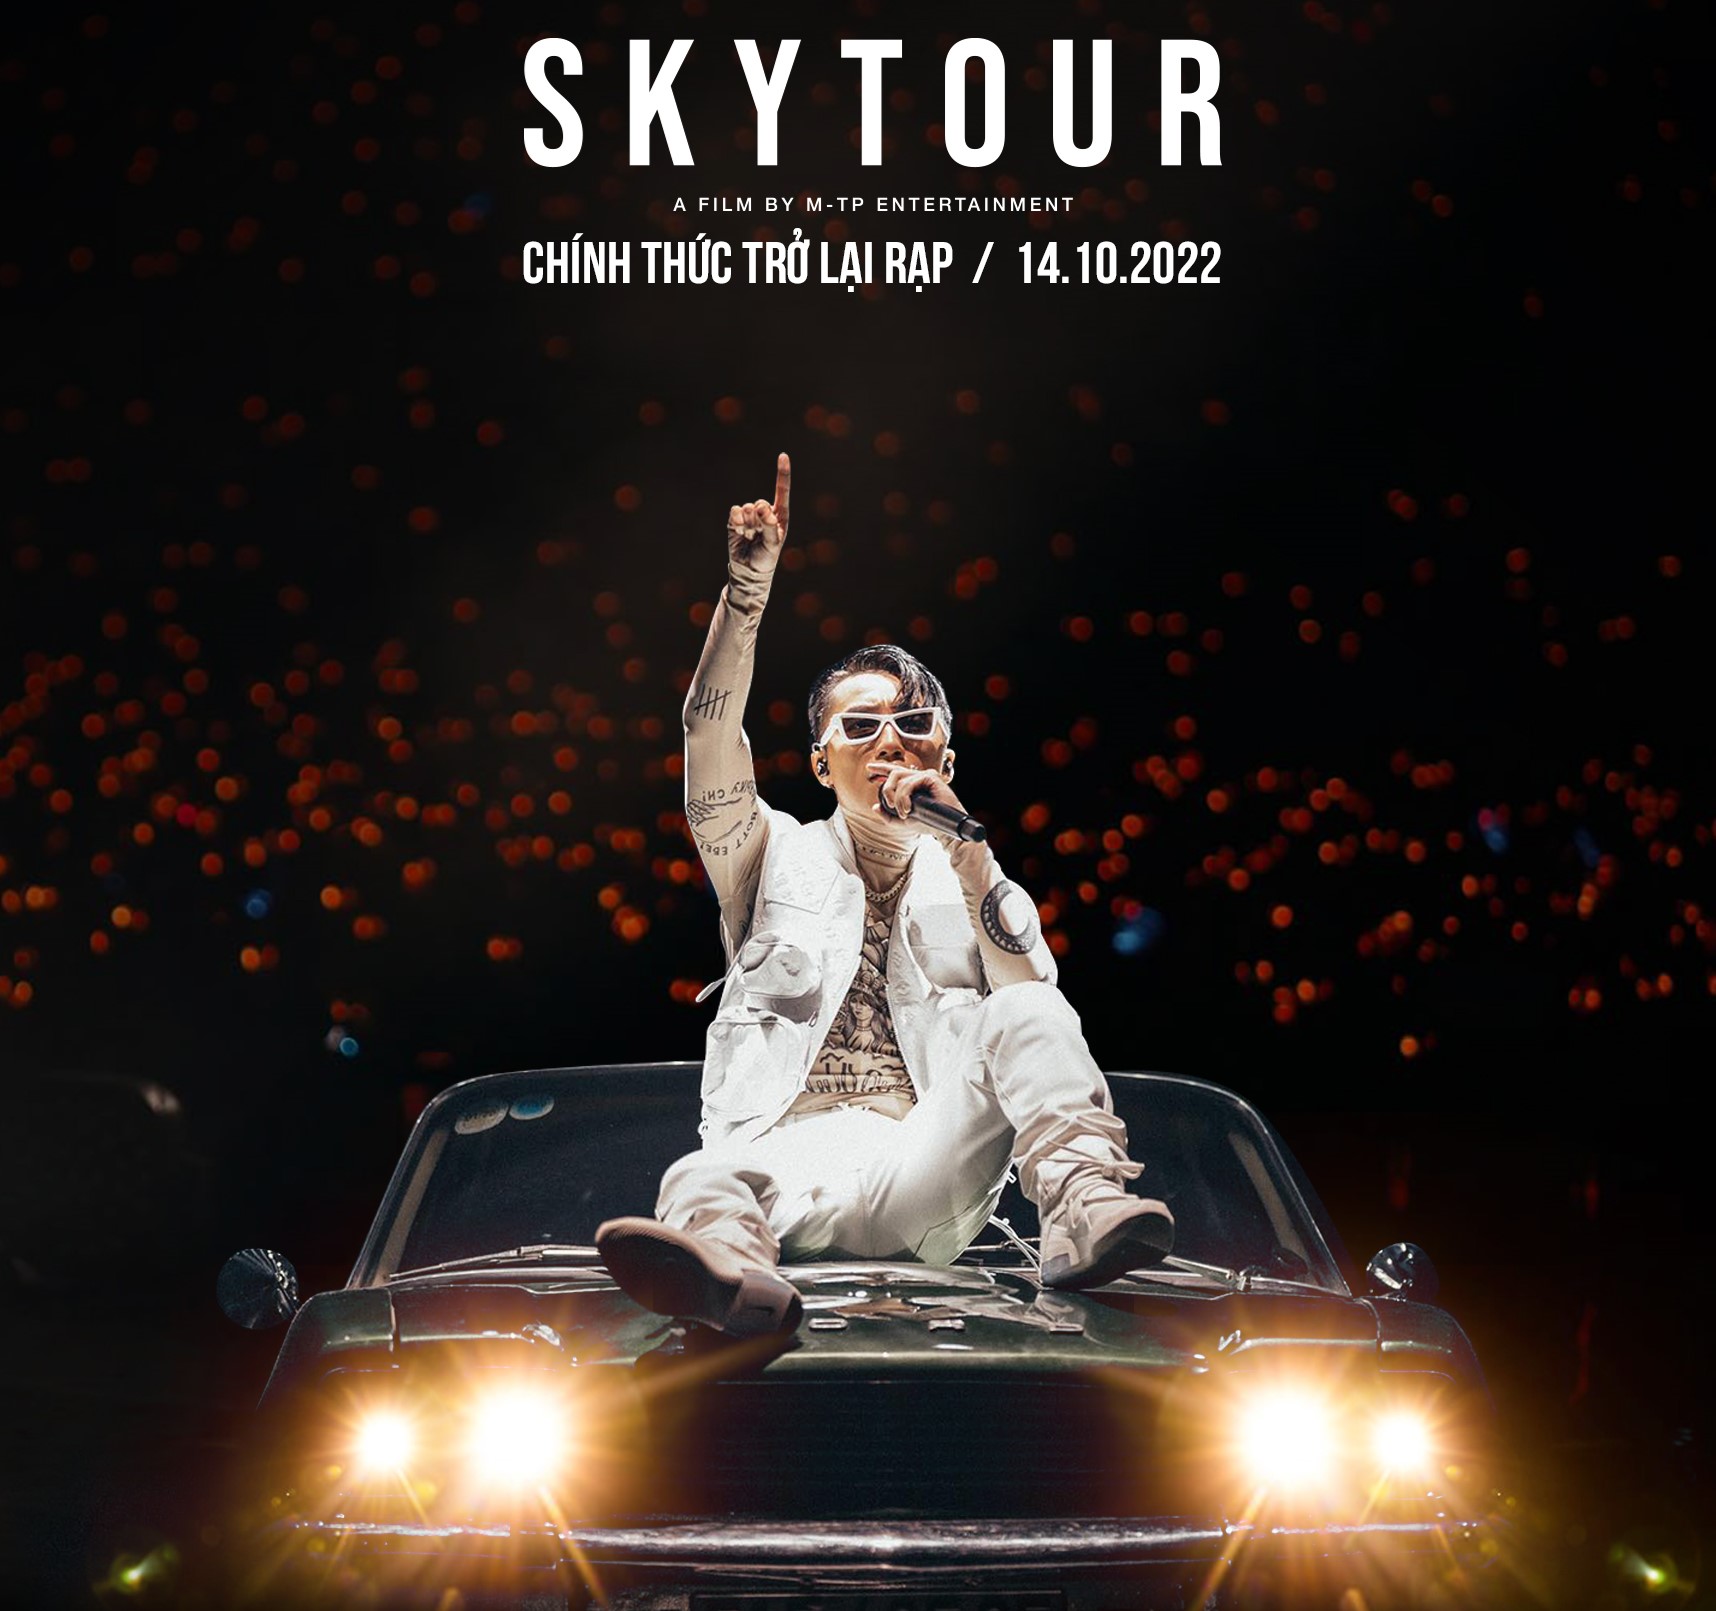 Sơn Tùng M-TP đưa “Sky tour movie” quay trở lại rạp chiếu